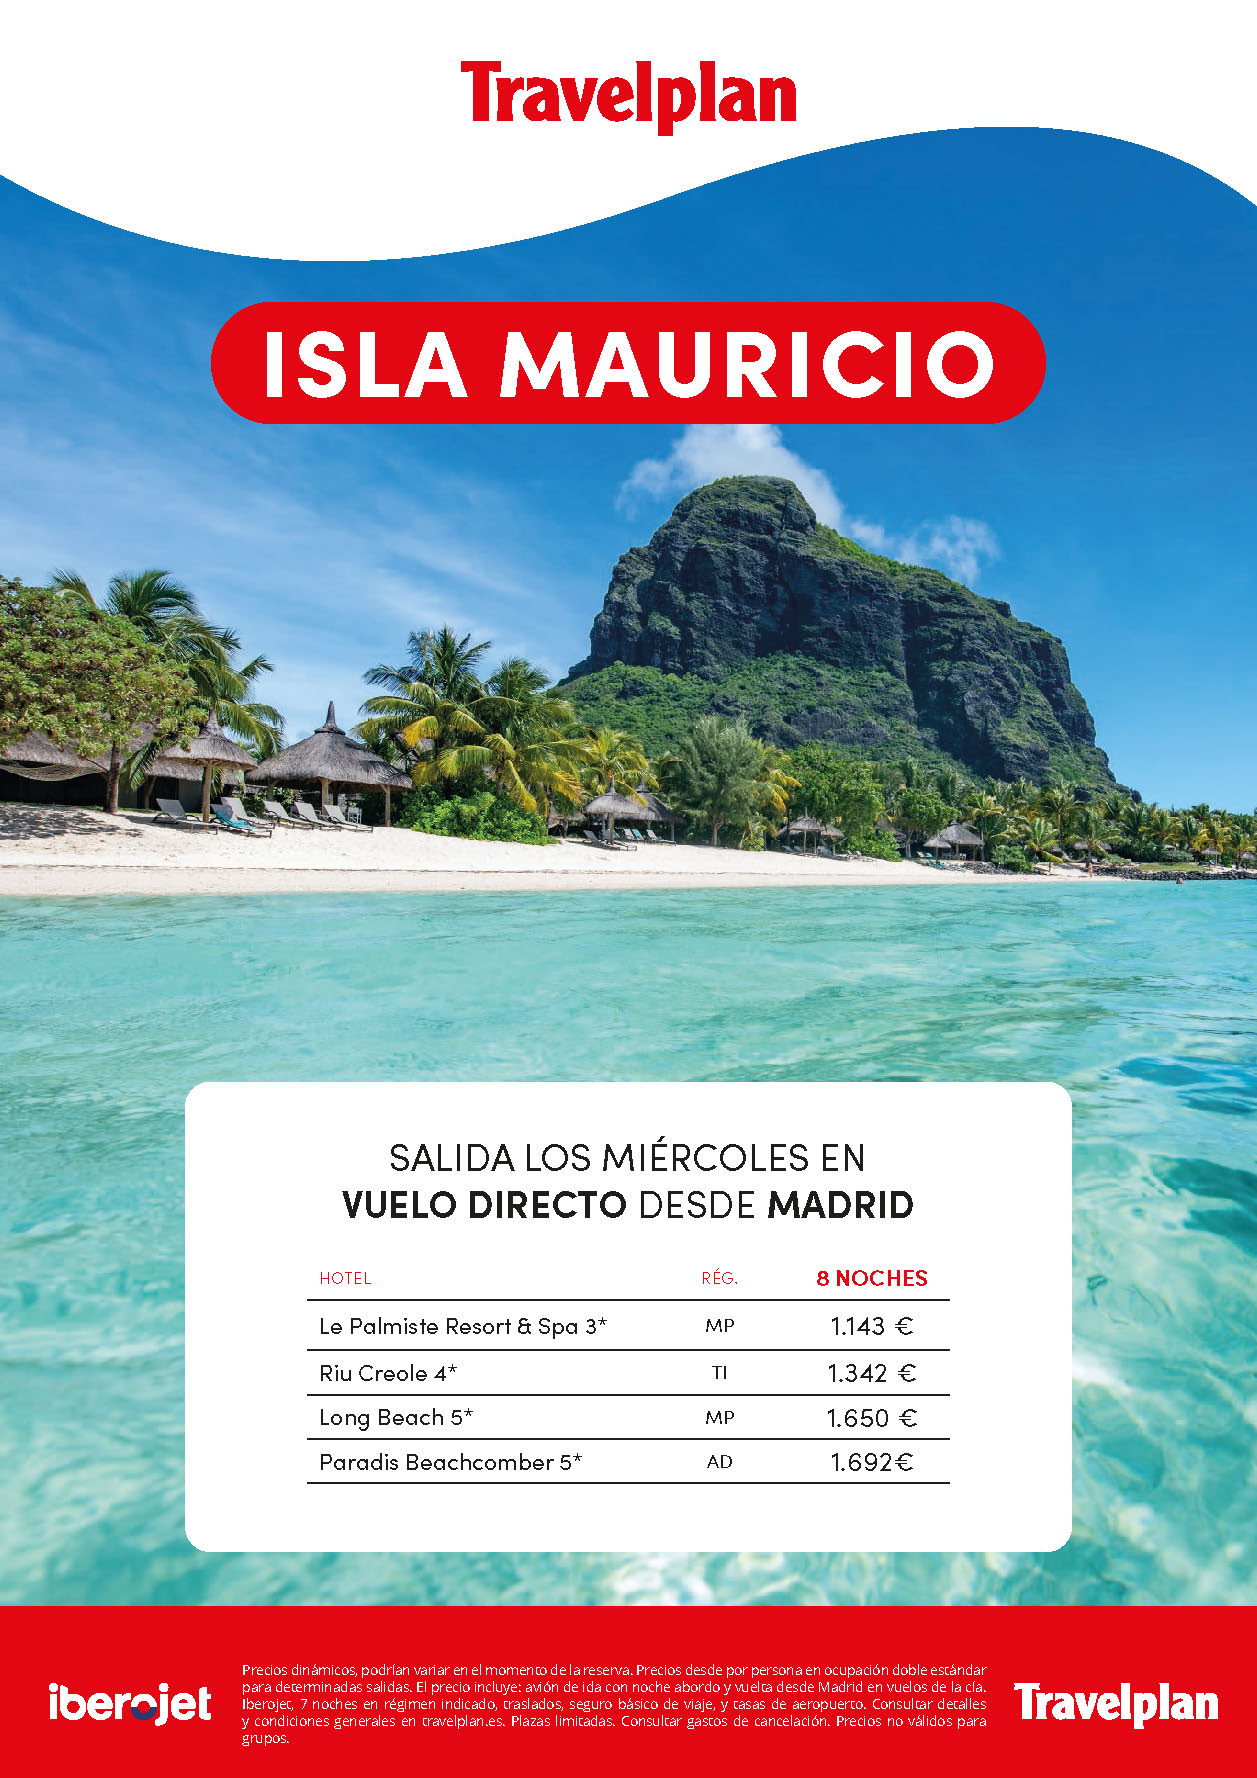 Oferta Travelplan Vacaciones en Mauricio Verano 2022 9 dias salidas en vuelo directo desde Madrid